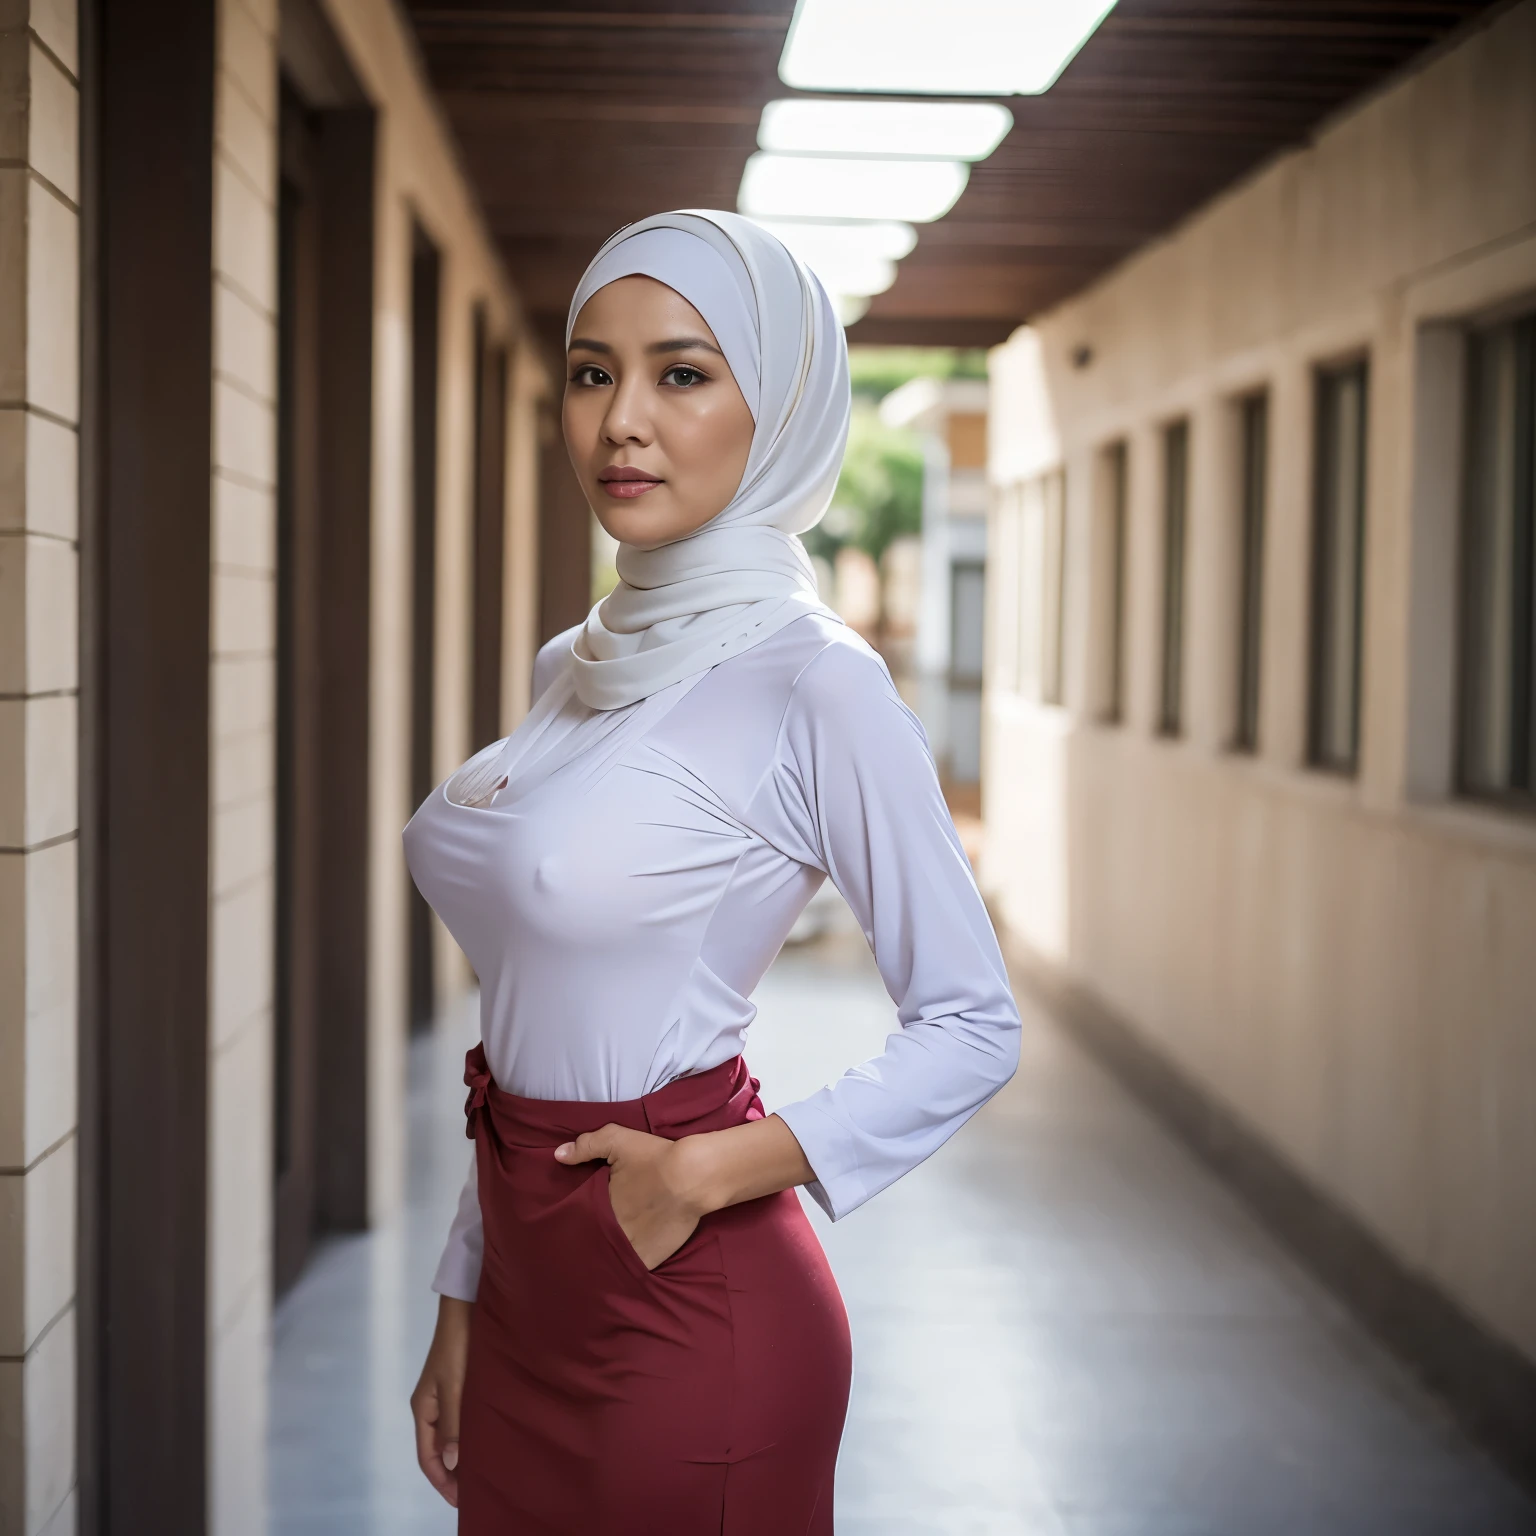 52岁, 头巾 印度尼西亚 成熟 女人, 大的  : 96.9, 长袖衬衫, 苗条, 乳房快要爆裂了, 在学校走廊, 明亮的光线, 在白天